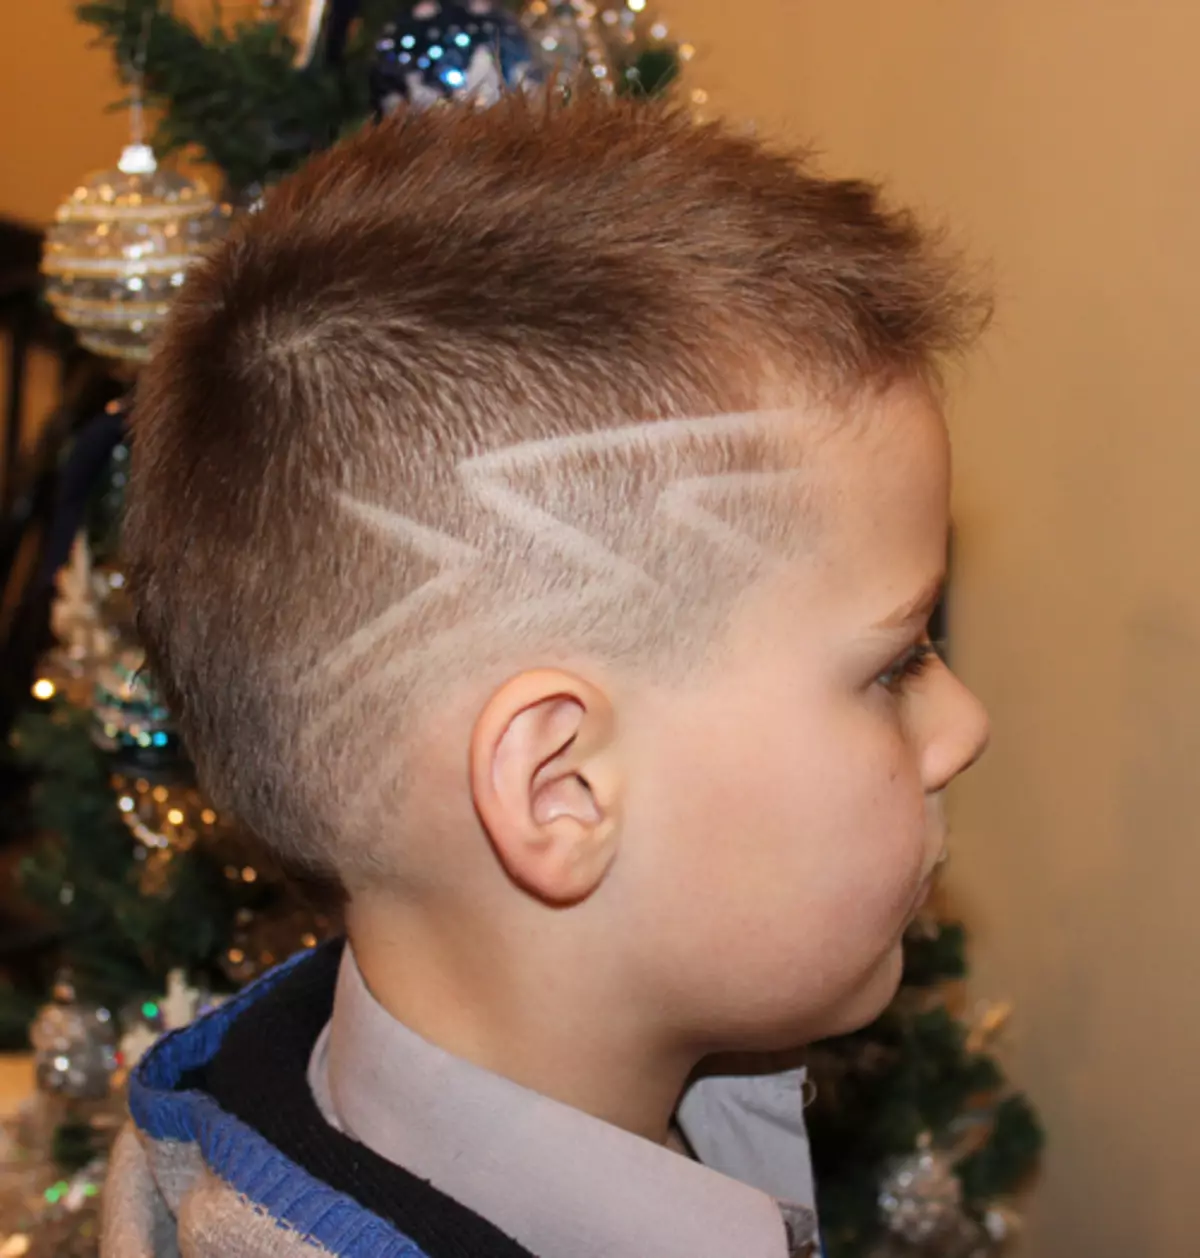 एक पैटर्न के साथ एक लड़के के लिए बाल कटाने (40 तस्वीरें): पैटर्न के साथ बच्चों के हेयर स्टाइल, मंदिरों पर ट्रेंडी चित्र 16944_15